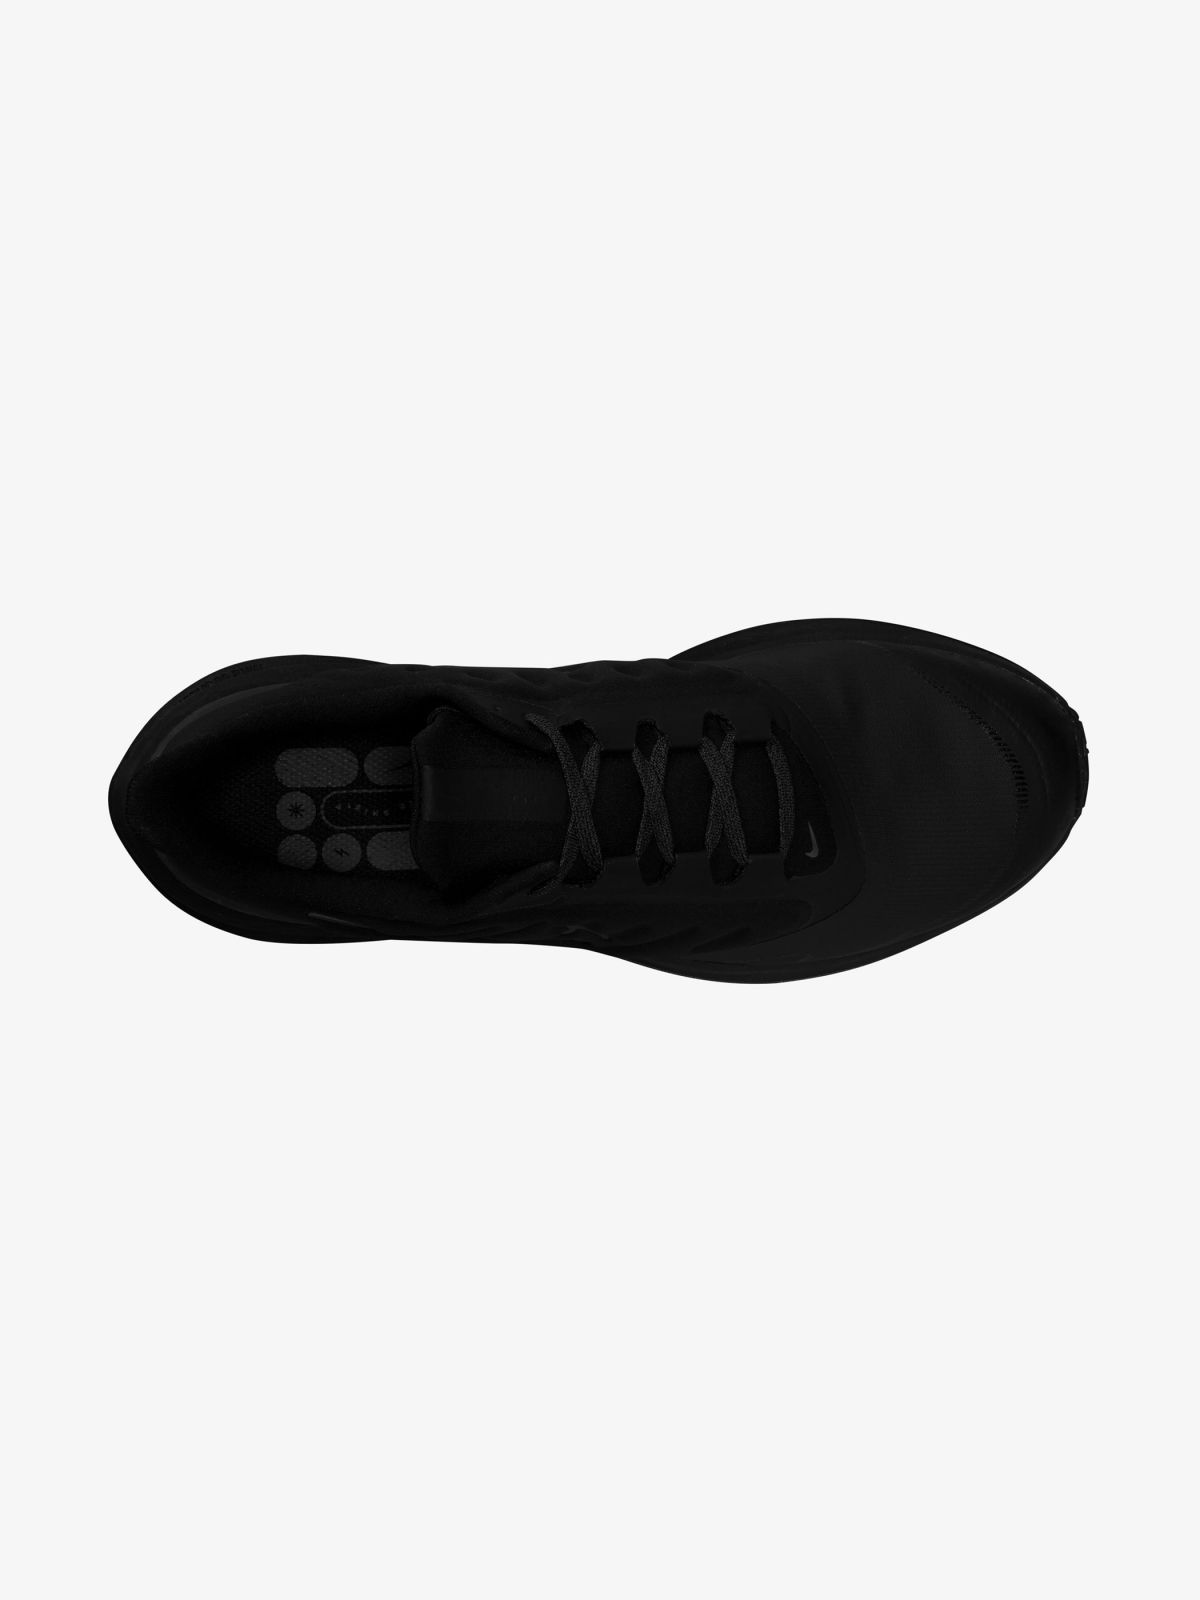  נעלי ריצה Nike Air Winflo 9 Shield / גברים של NIKE